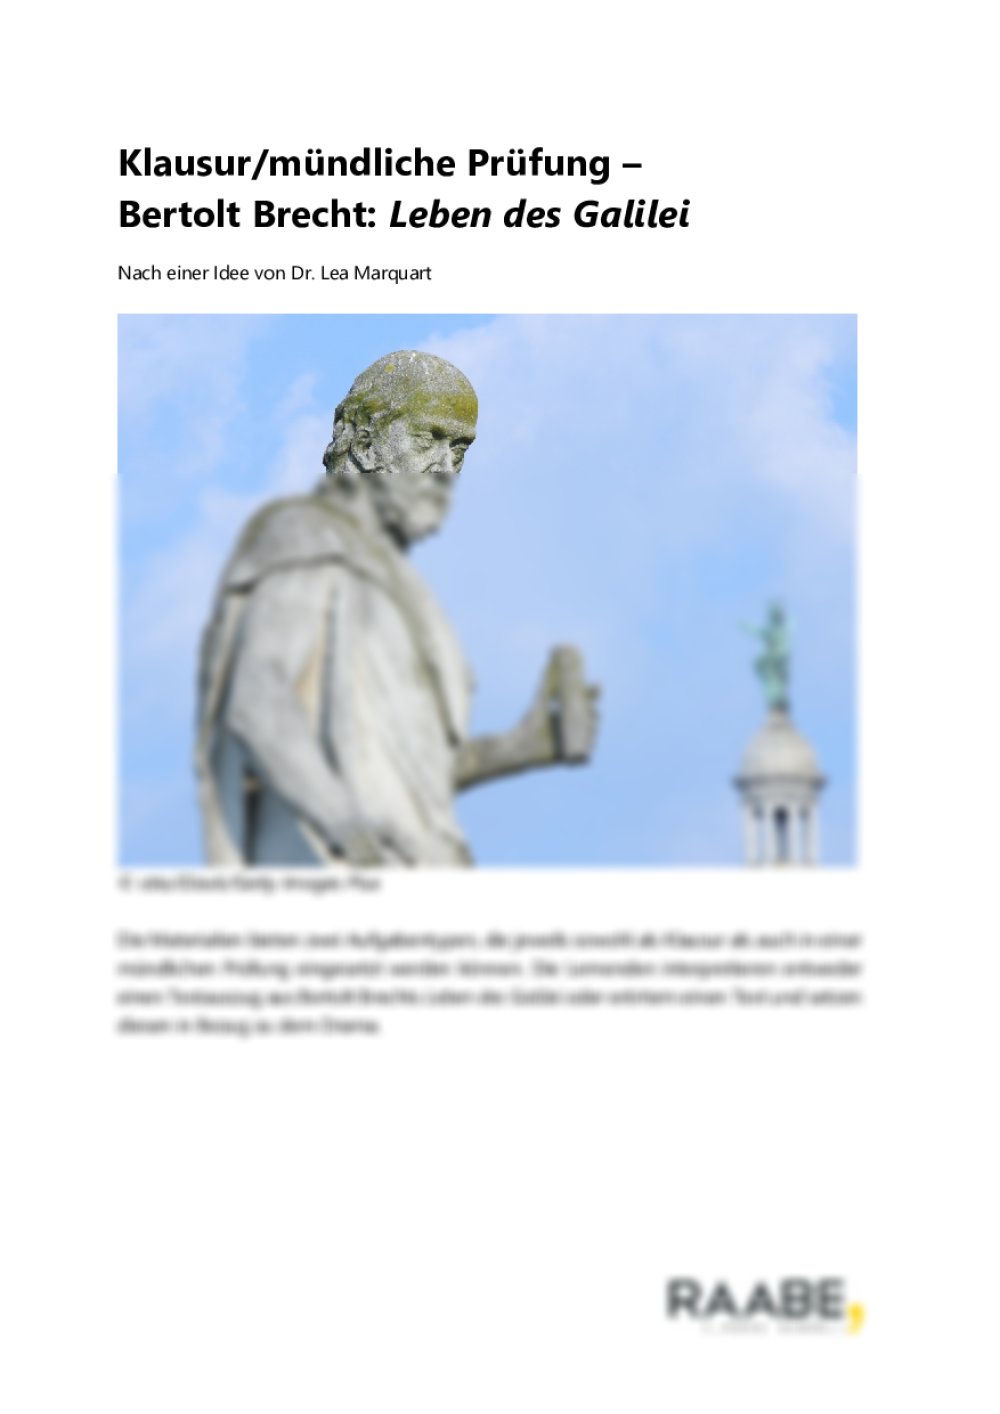 Klausur/mündliche Prüfung – Bertolt Brecht: Leben des Galilei - Seite 1